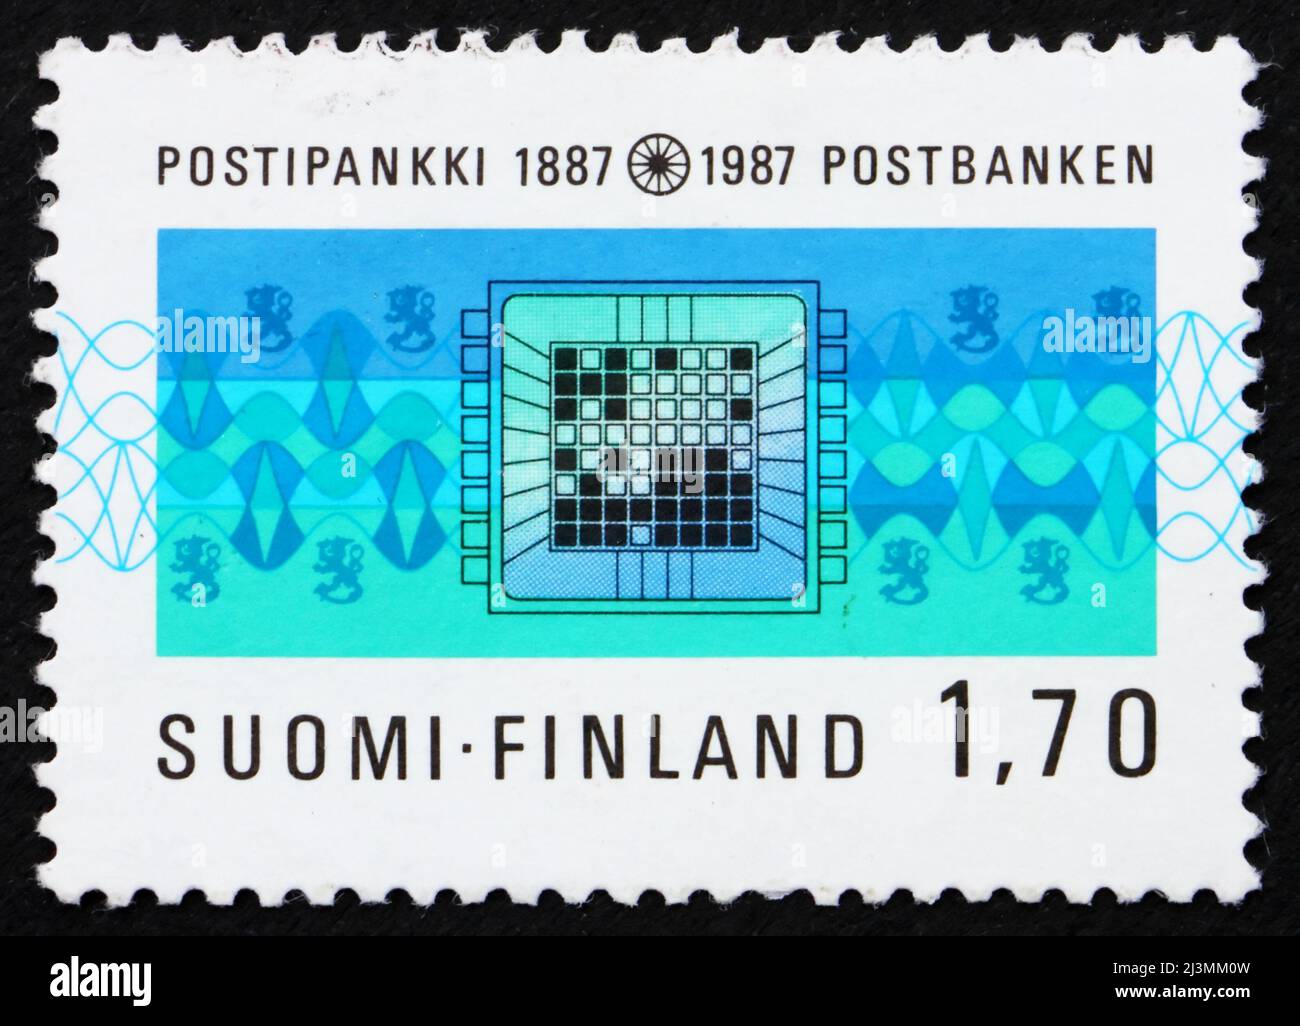 FINLANDE - VERS 1987: Un timbre imprimé en Finlande montre la Banque d'épargne postale, Centenaire, vers 1987 Banque D'Images